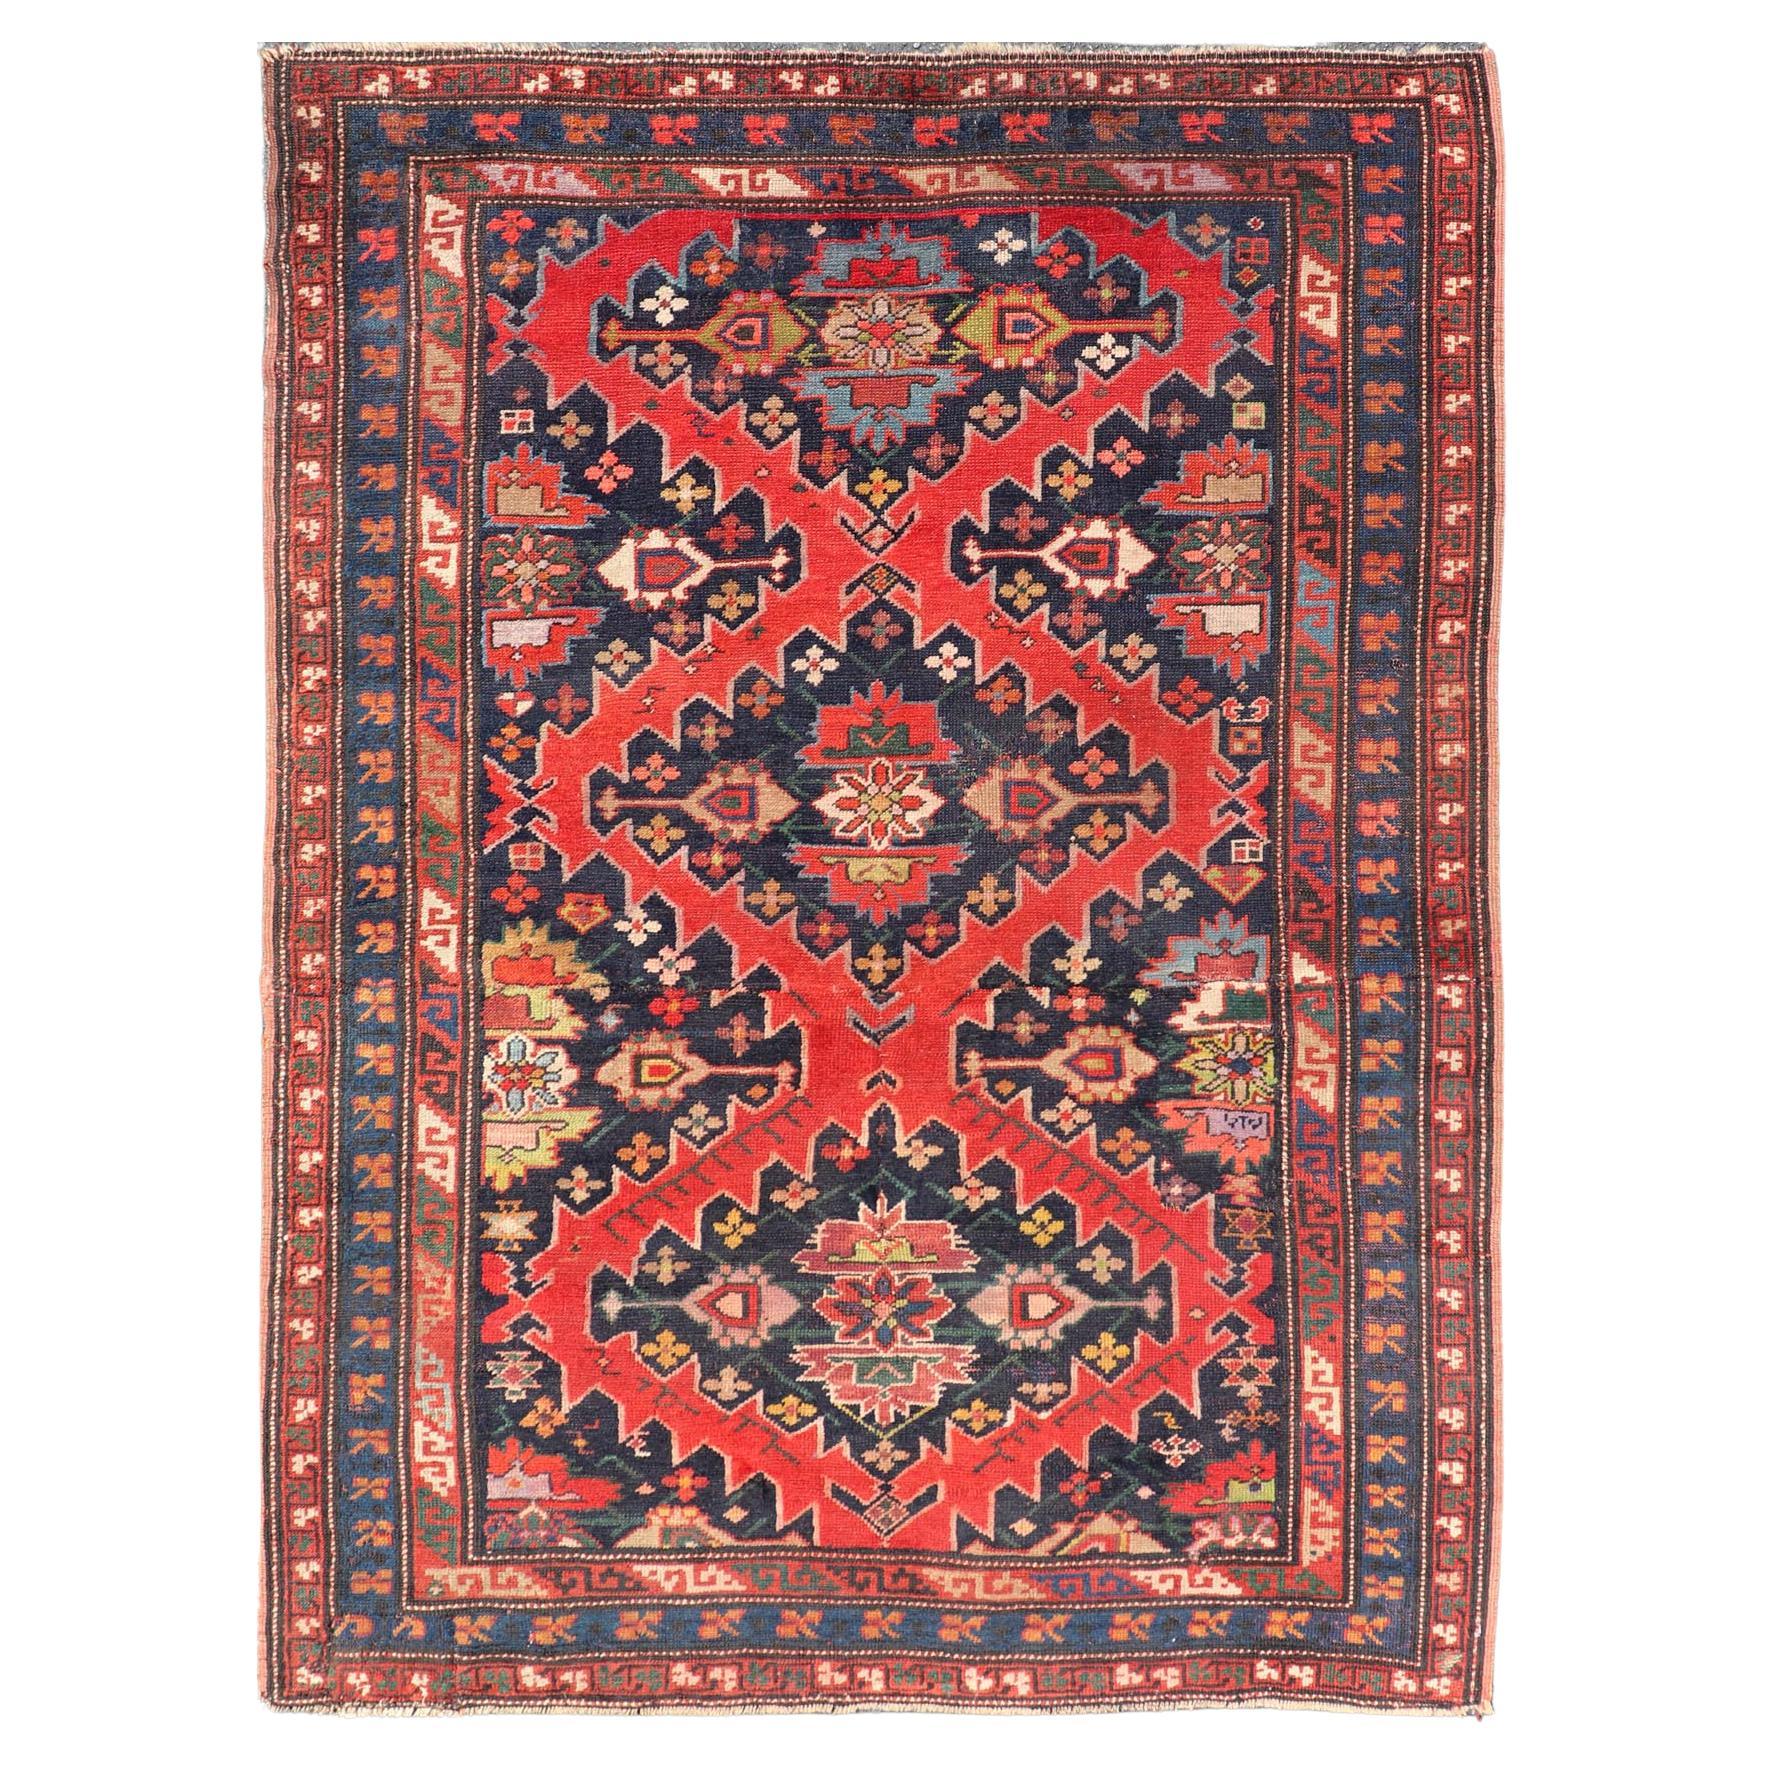 Antiker kaukasischer Kazak-Teppich mit subgeometrischem Medaillon-Design in Rot und Blau